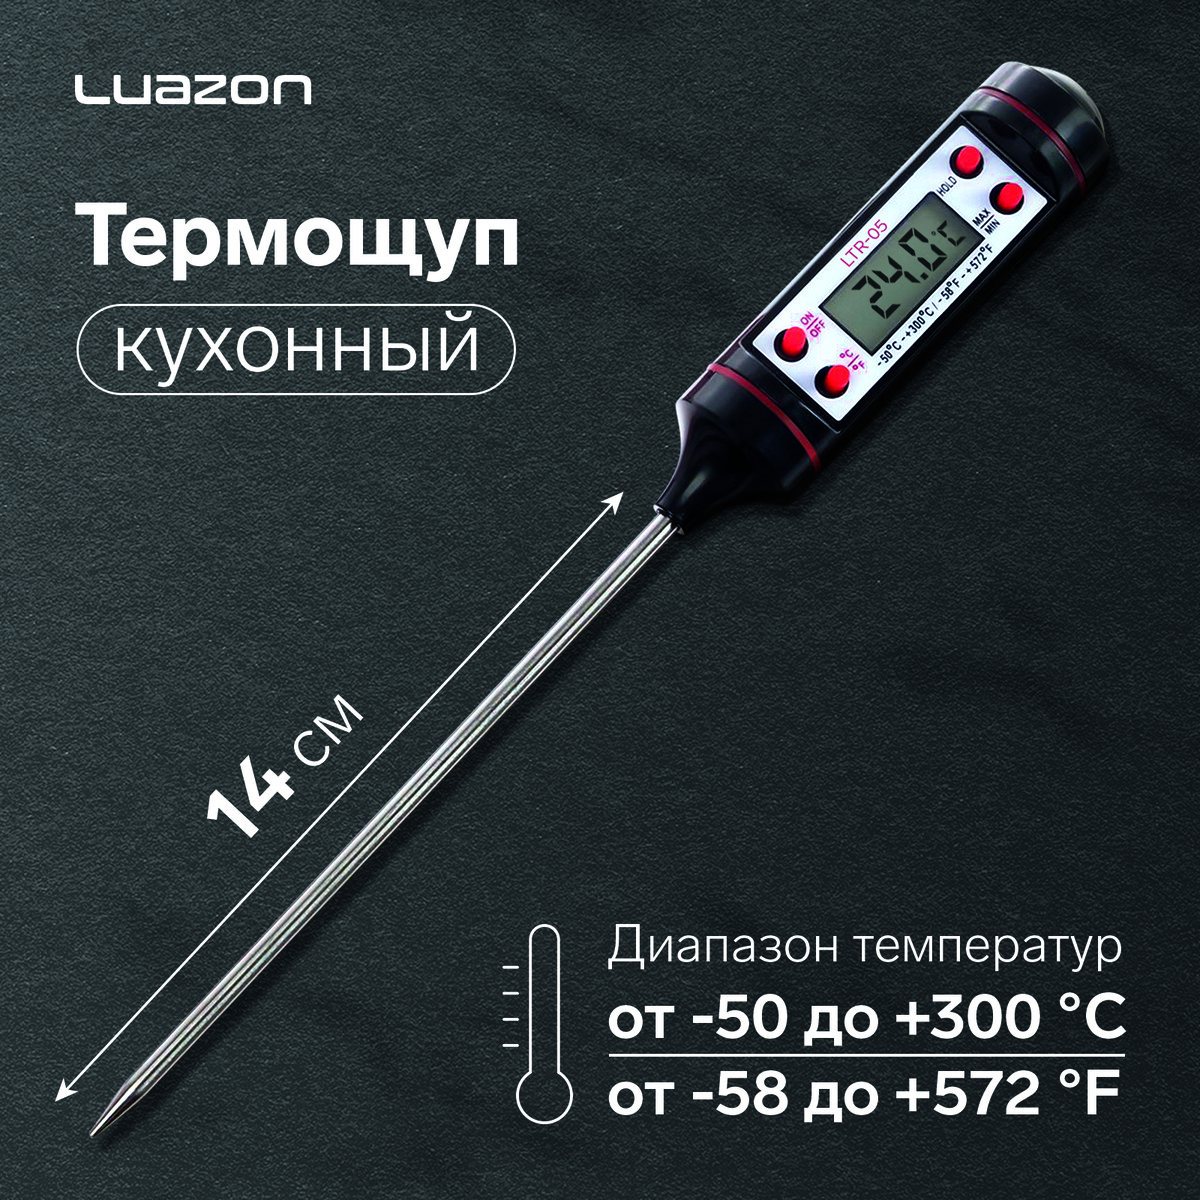 Термощуп кухонный luazon ltr-05, max 300 °c, от lr44, черный термощуп кухонный ltp 001 максимальная температура 200 °c от батареек lr44